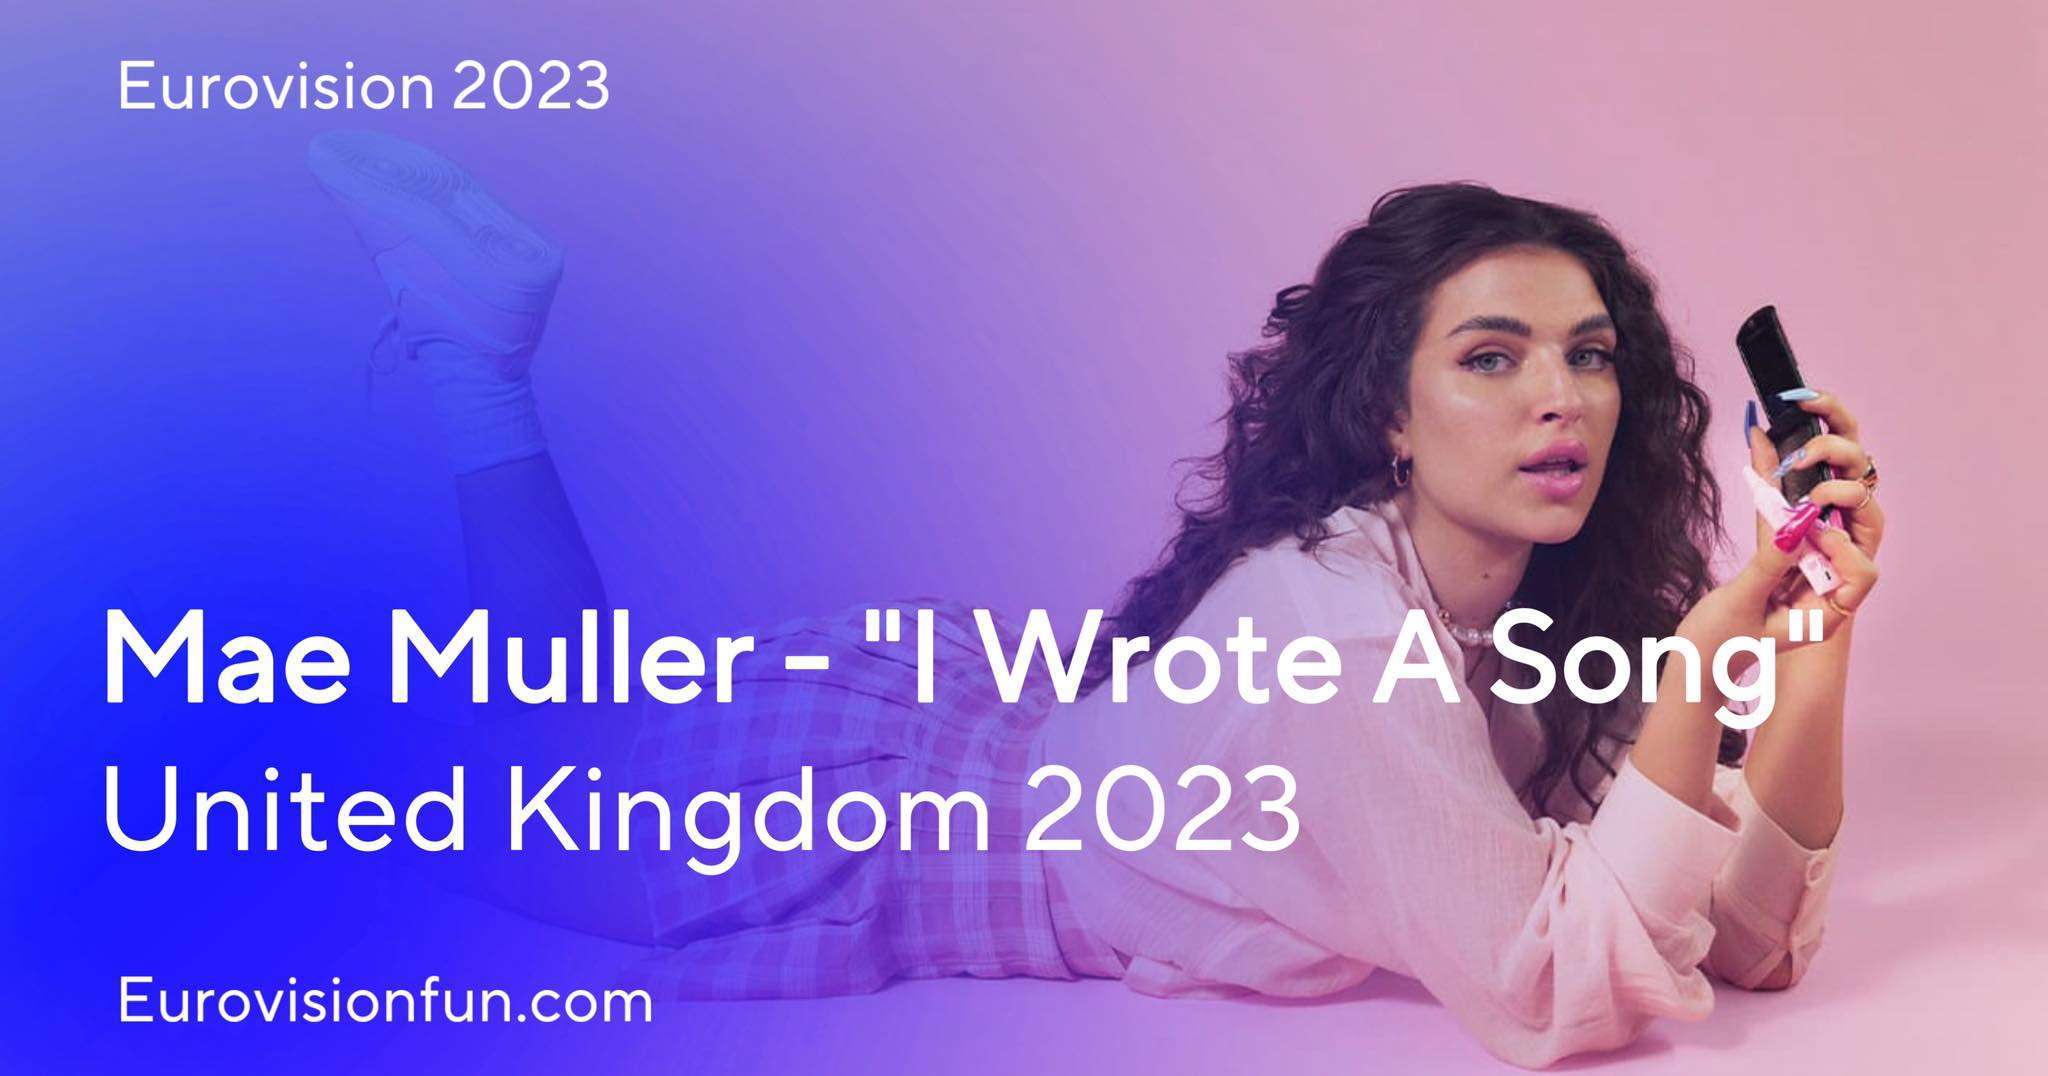 Mae Muller I Wrote A Song lyrics - UK Eurovision 2023